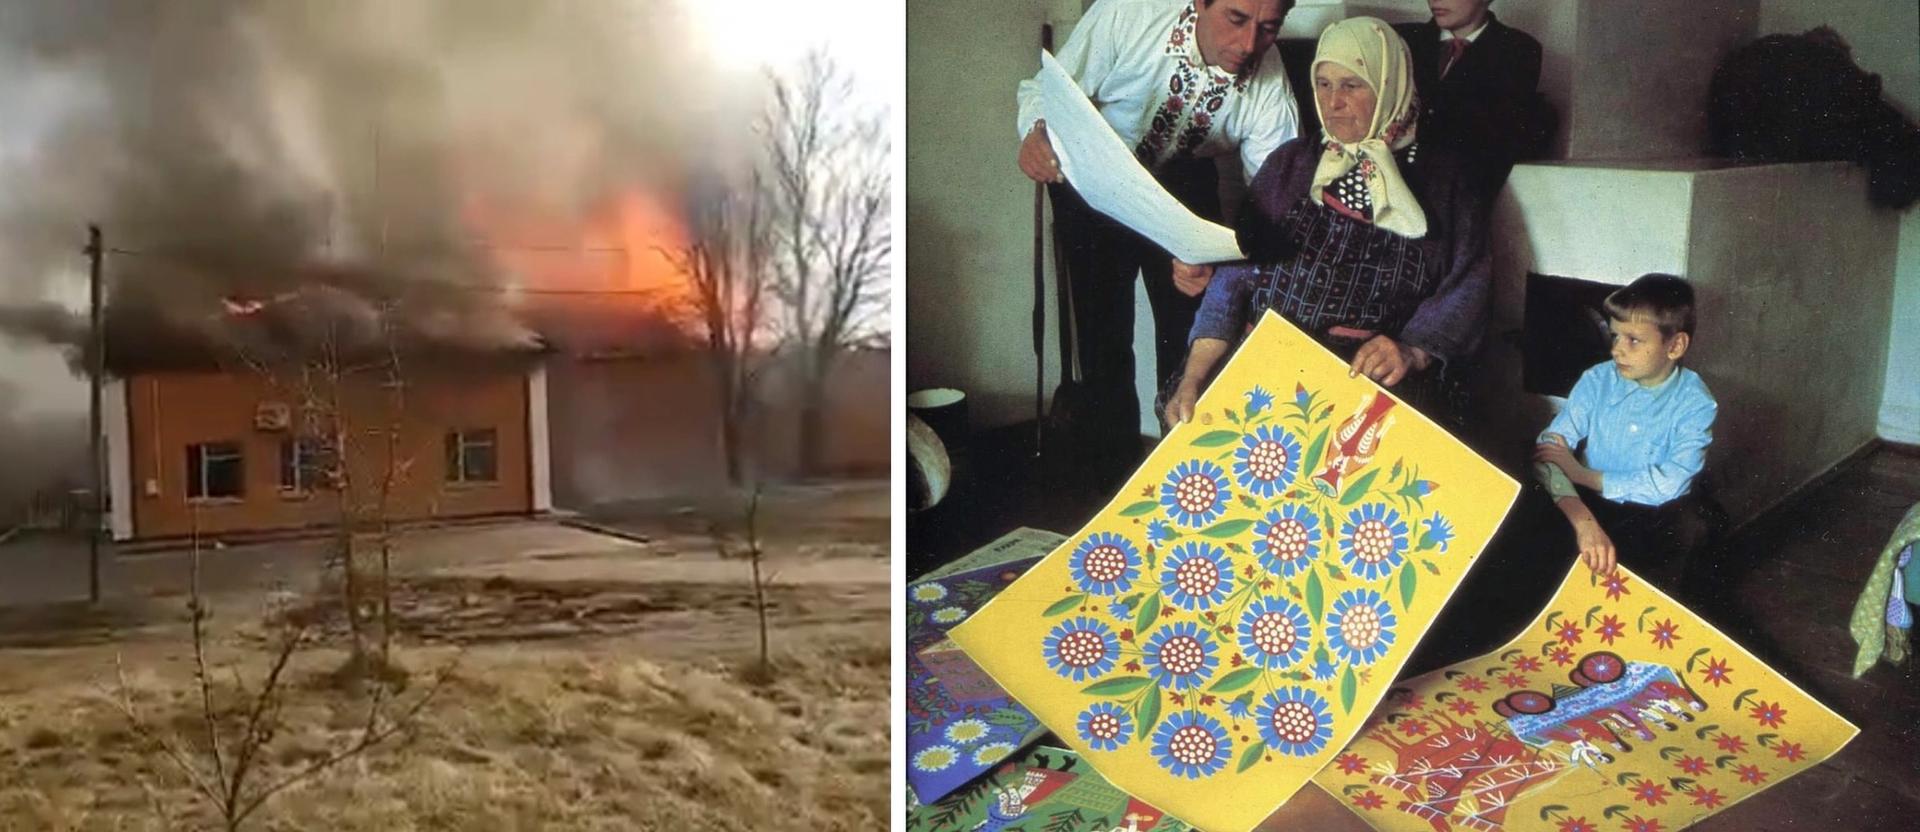 【ヴァンダリズム】ウクライナの美術館がロシアの侵攻で全焼